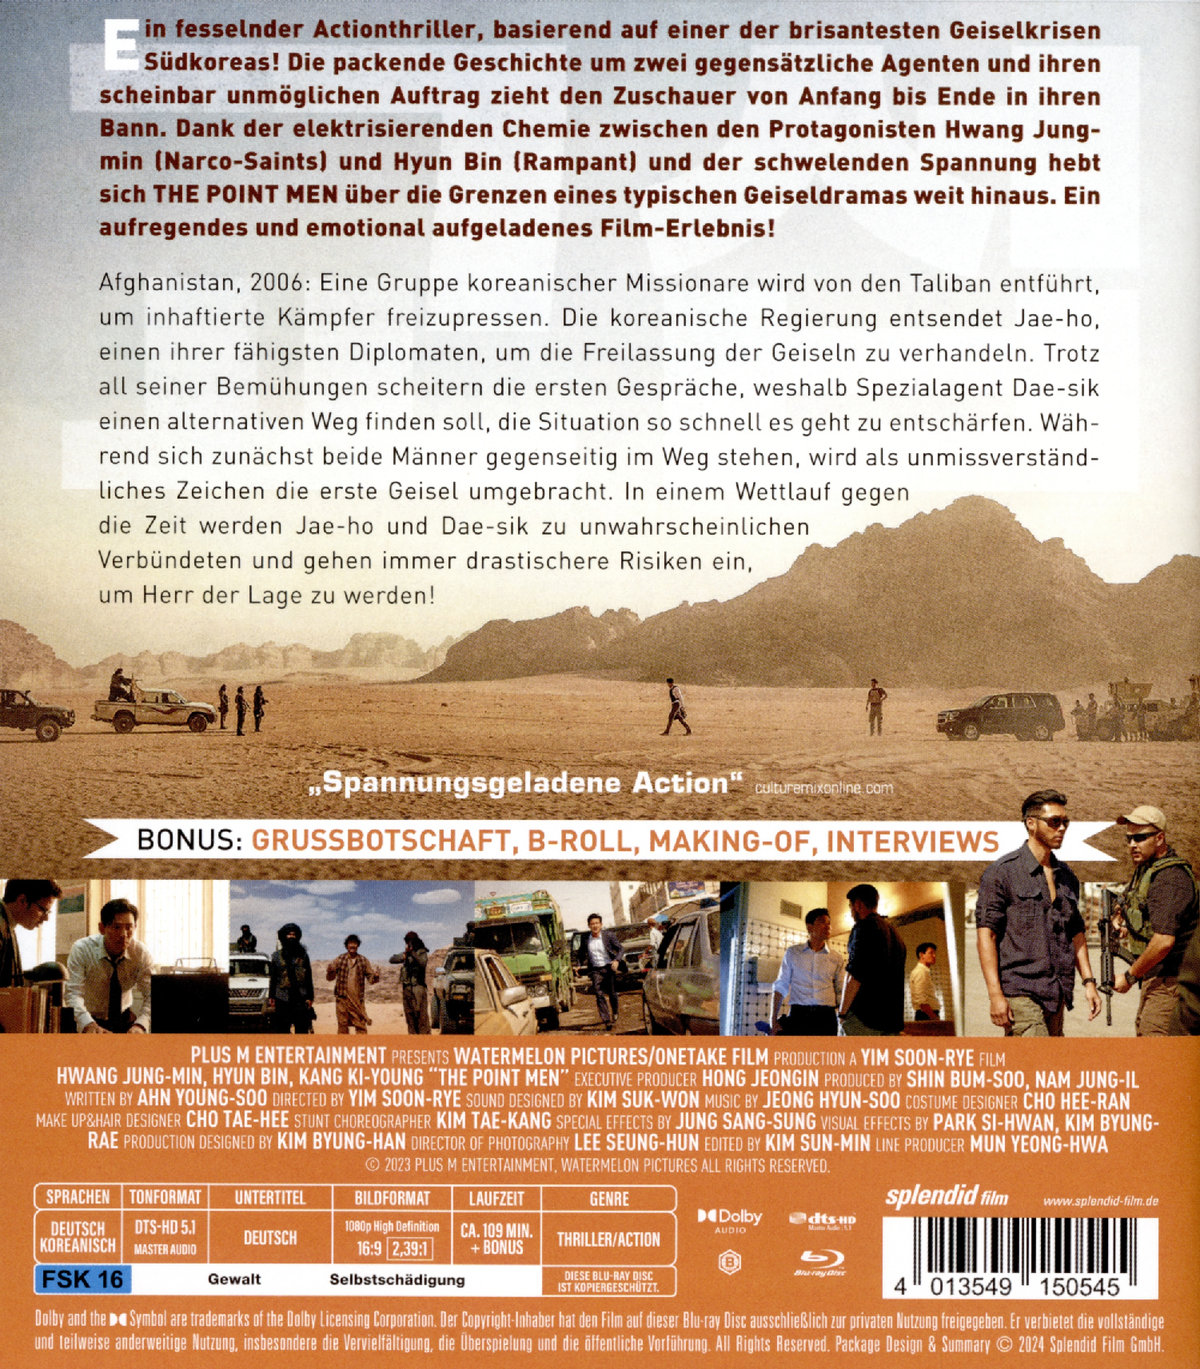 The Point Men - Gegen die Zeit  (Blu-ray Disc)